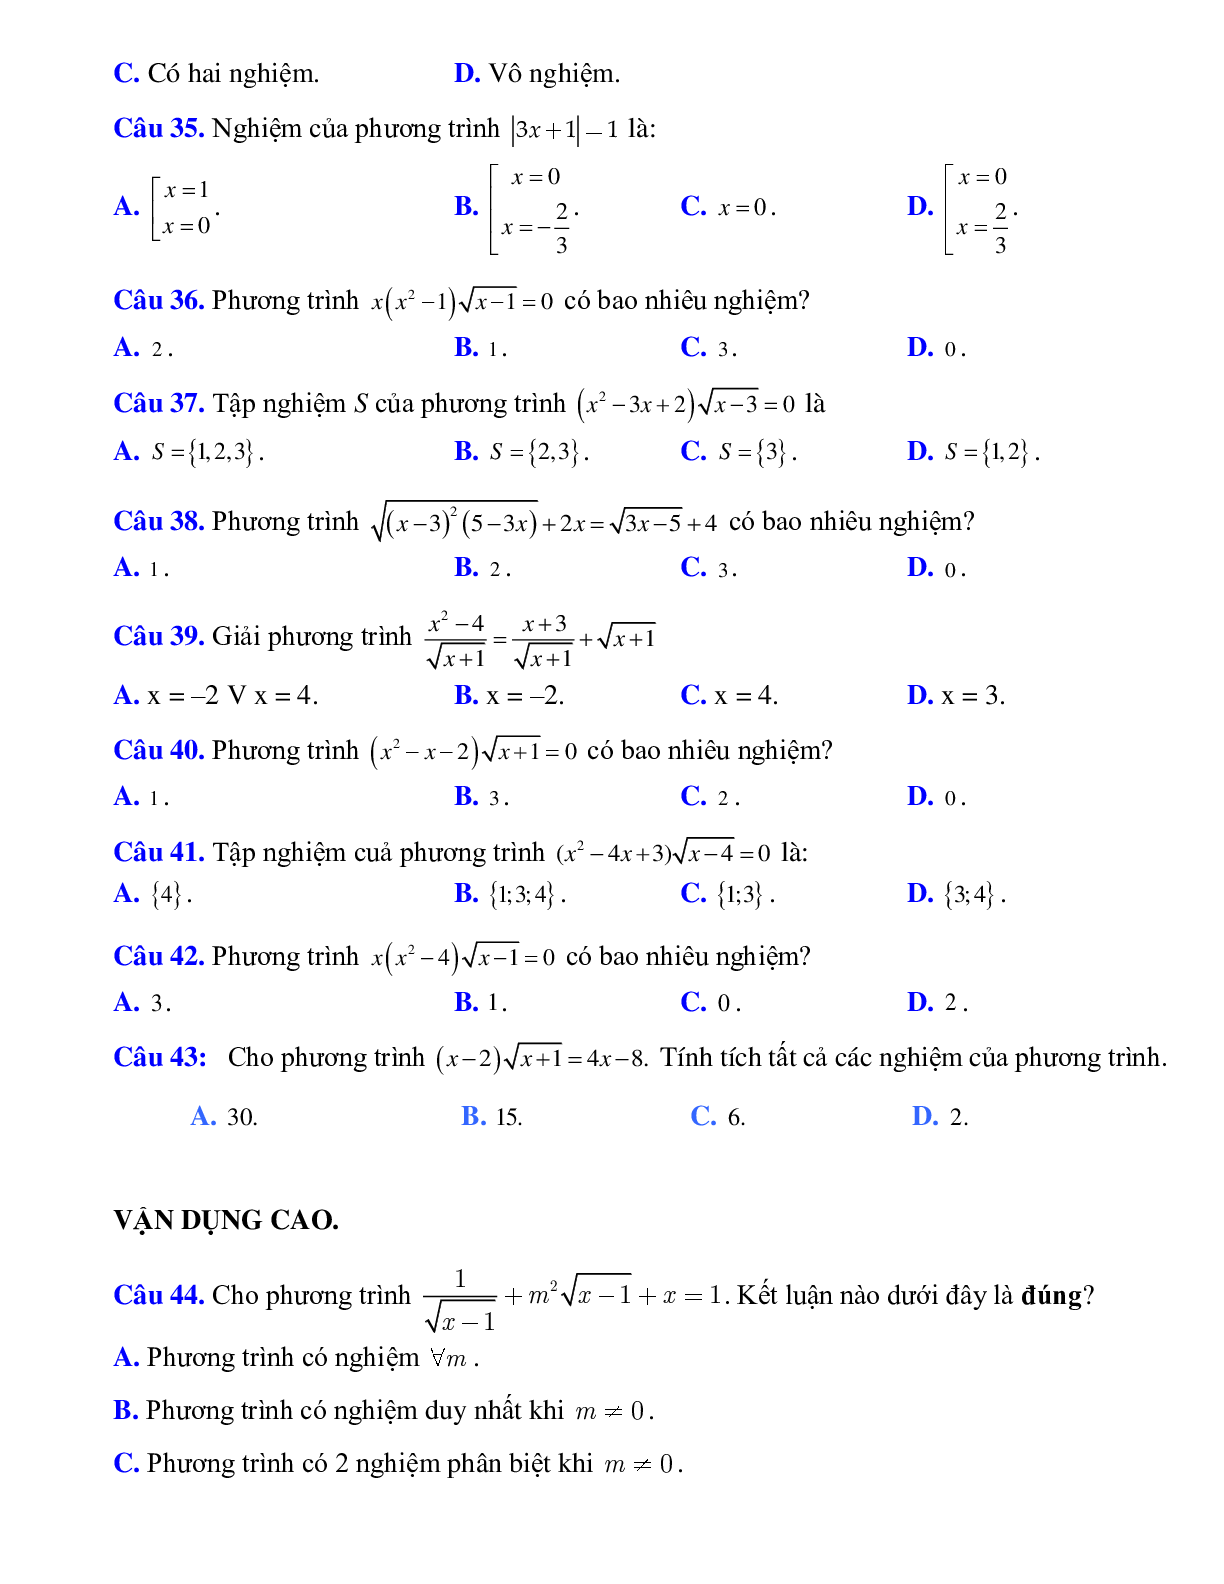 Giải phương trình (trang 6)